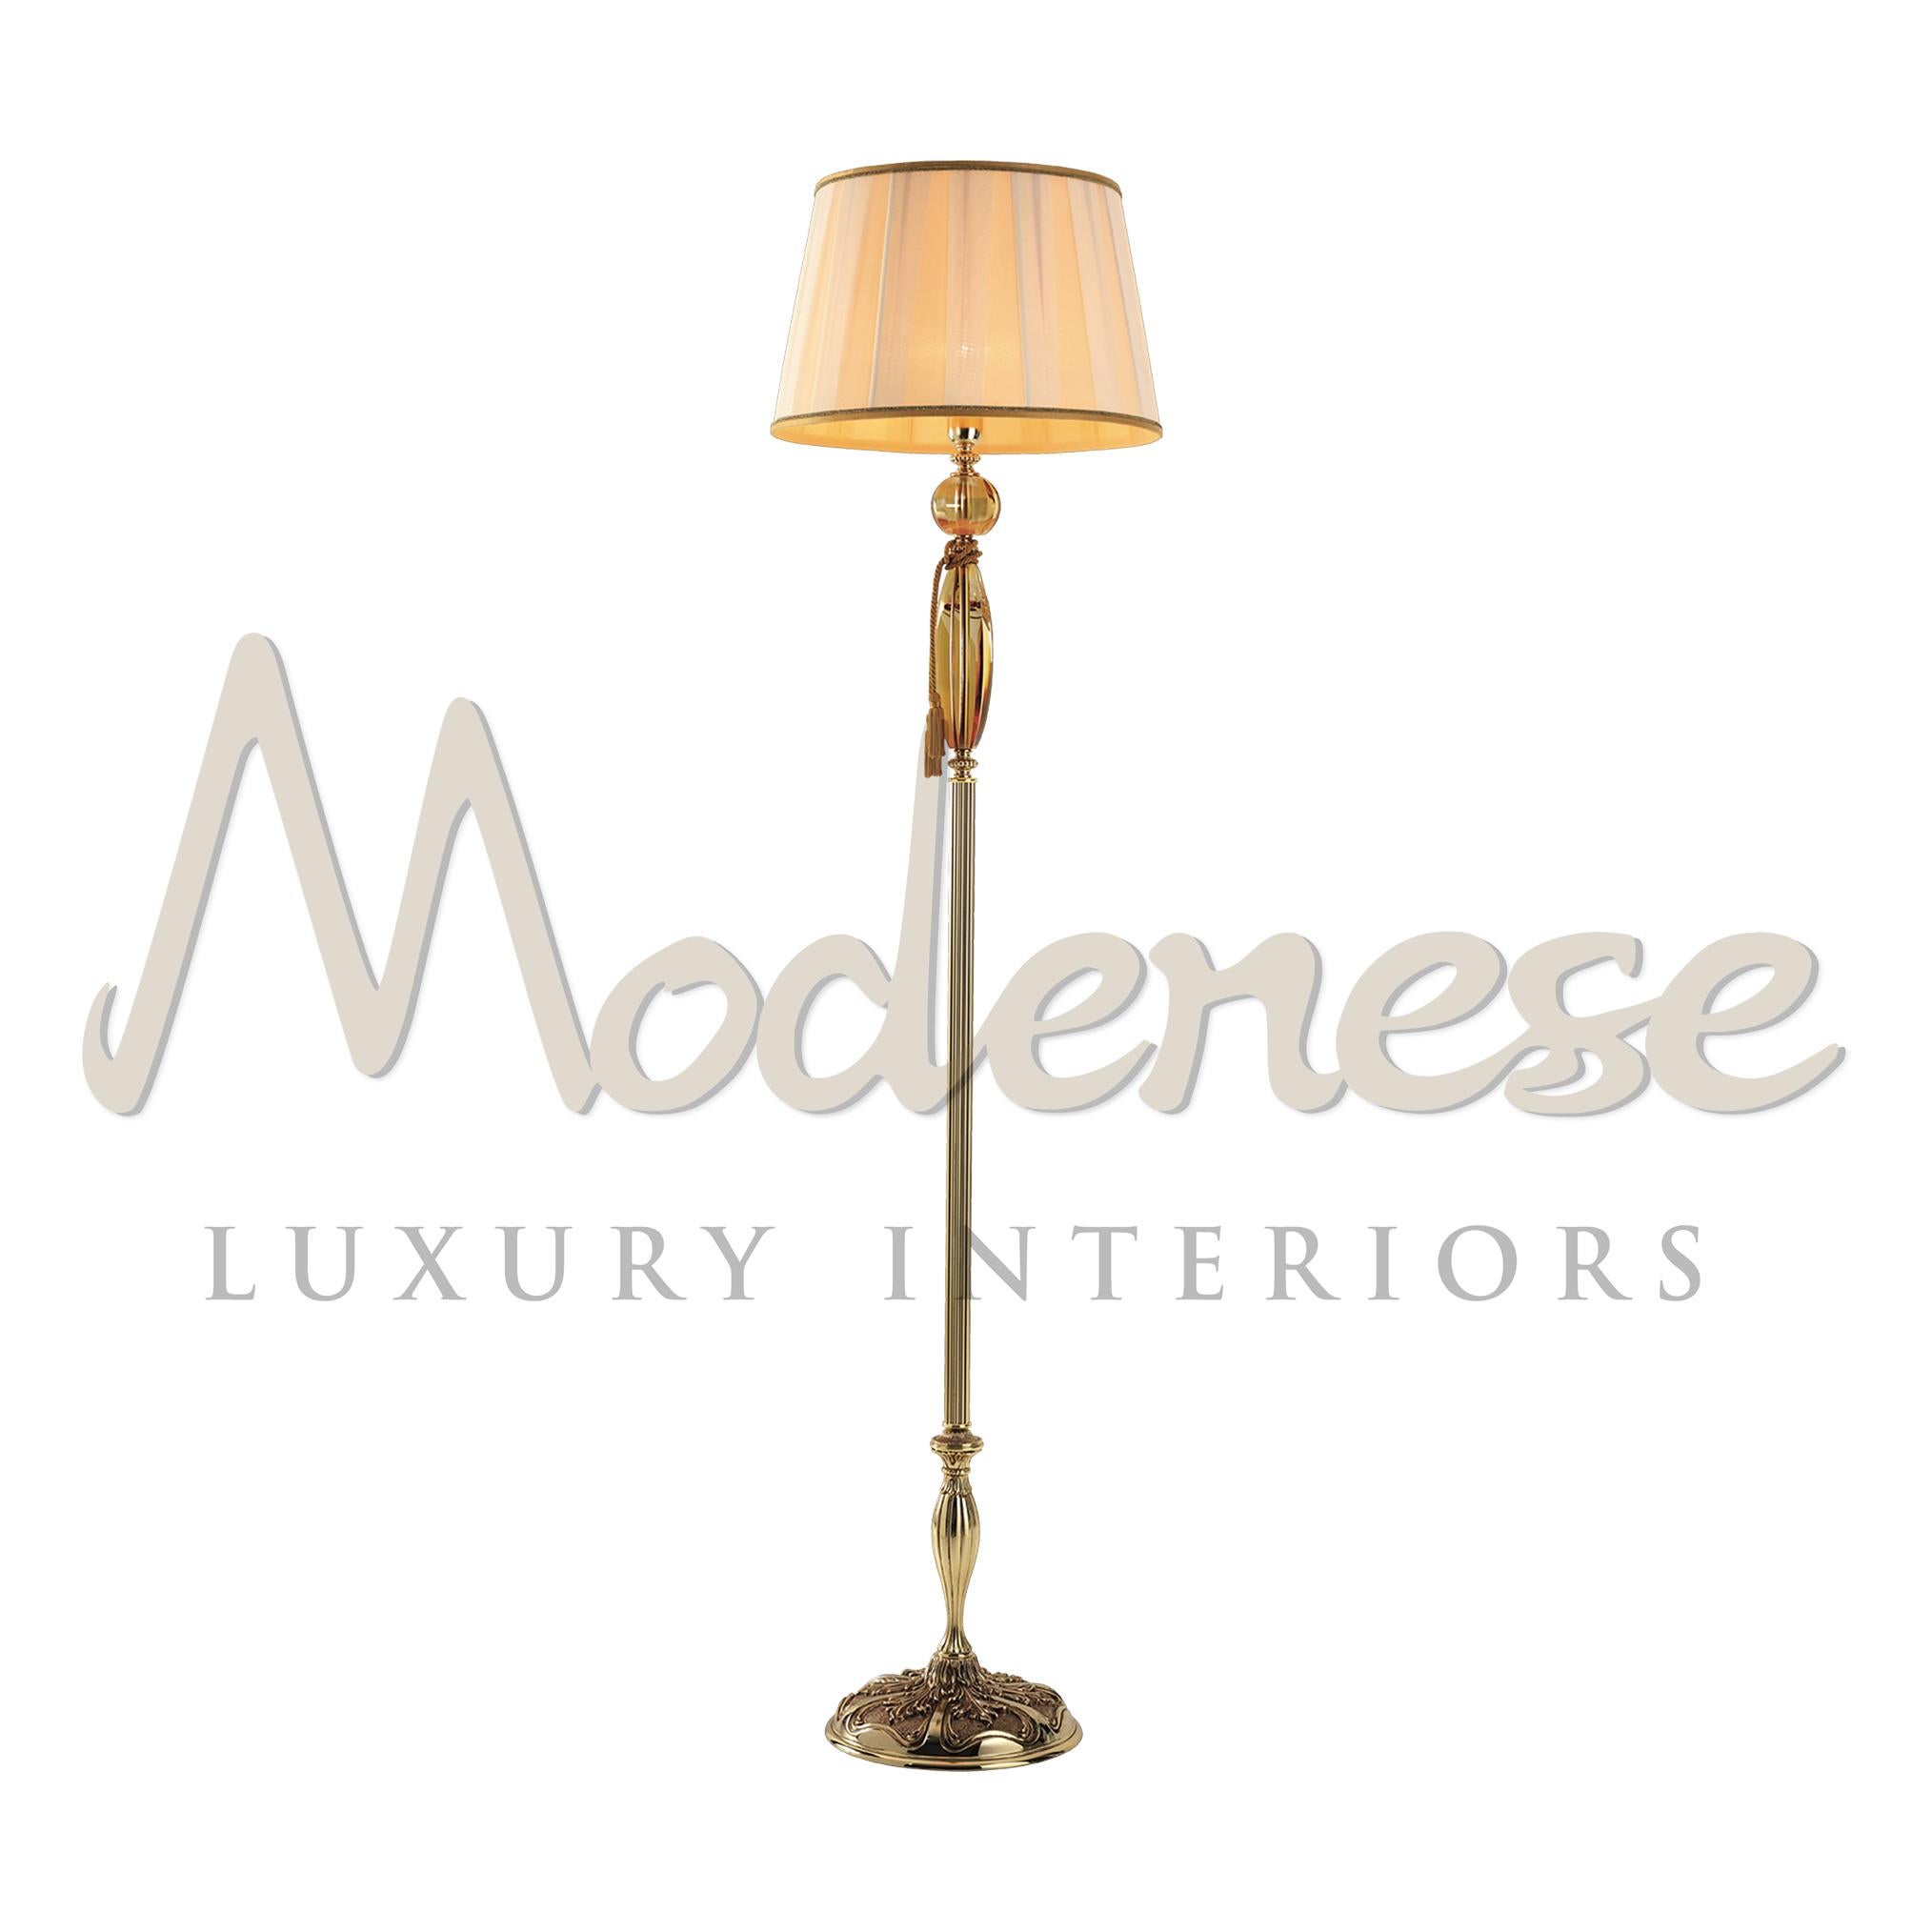 Ce lampadaire sur mesure ajoutera de la grâce aux intérieurs de style classique, traditionnel ou contemporain de votre demeure royale. Ce modèle de Modenese Luxury Interiors associe des matériaux français en laiton doré brillant et en cristal ambré.